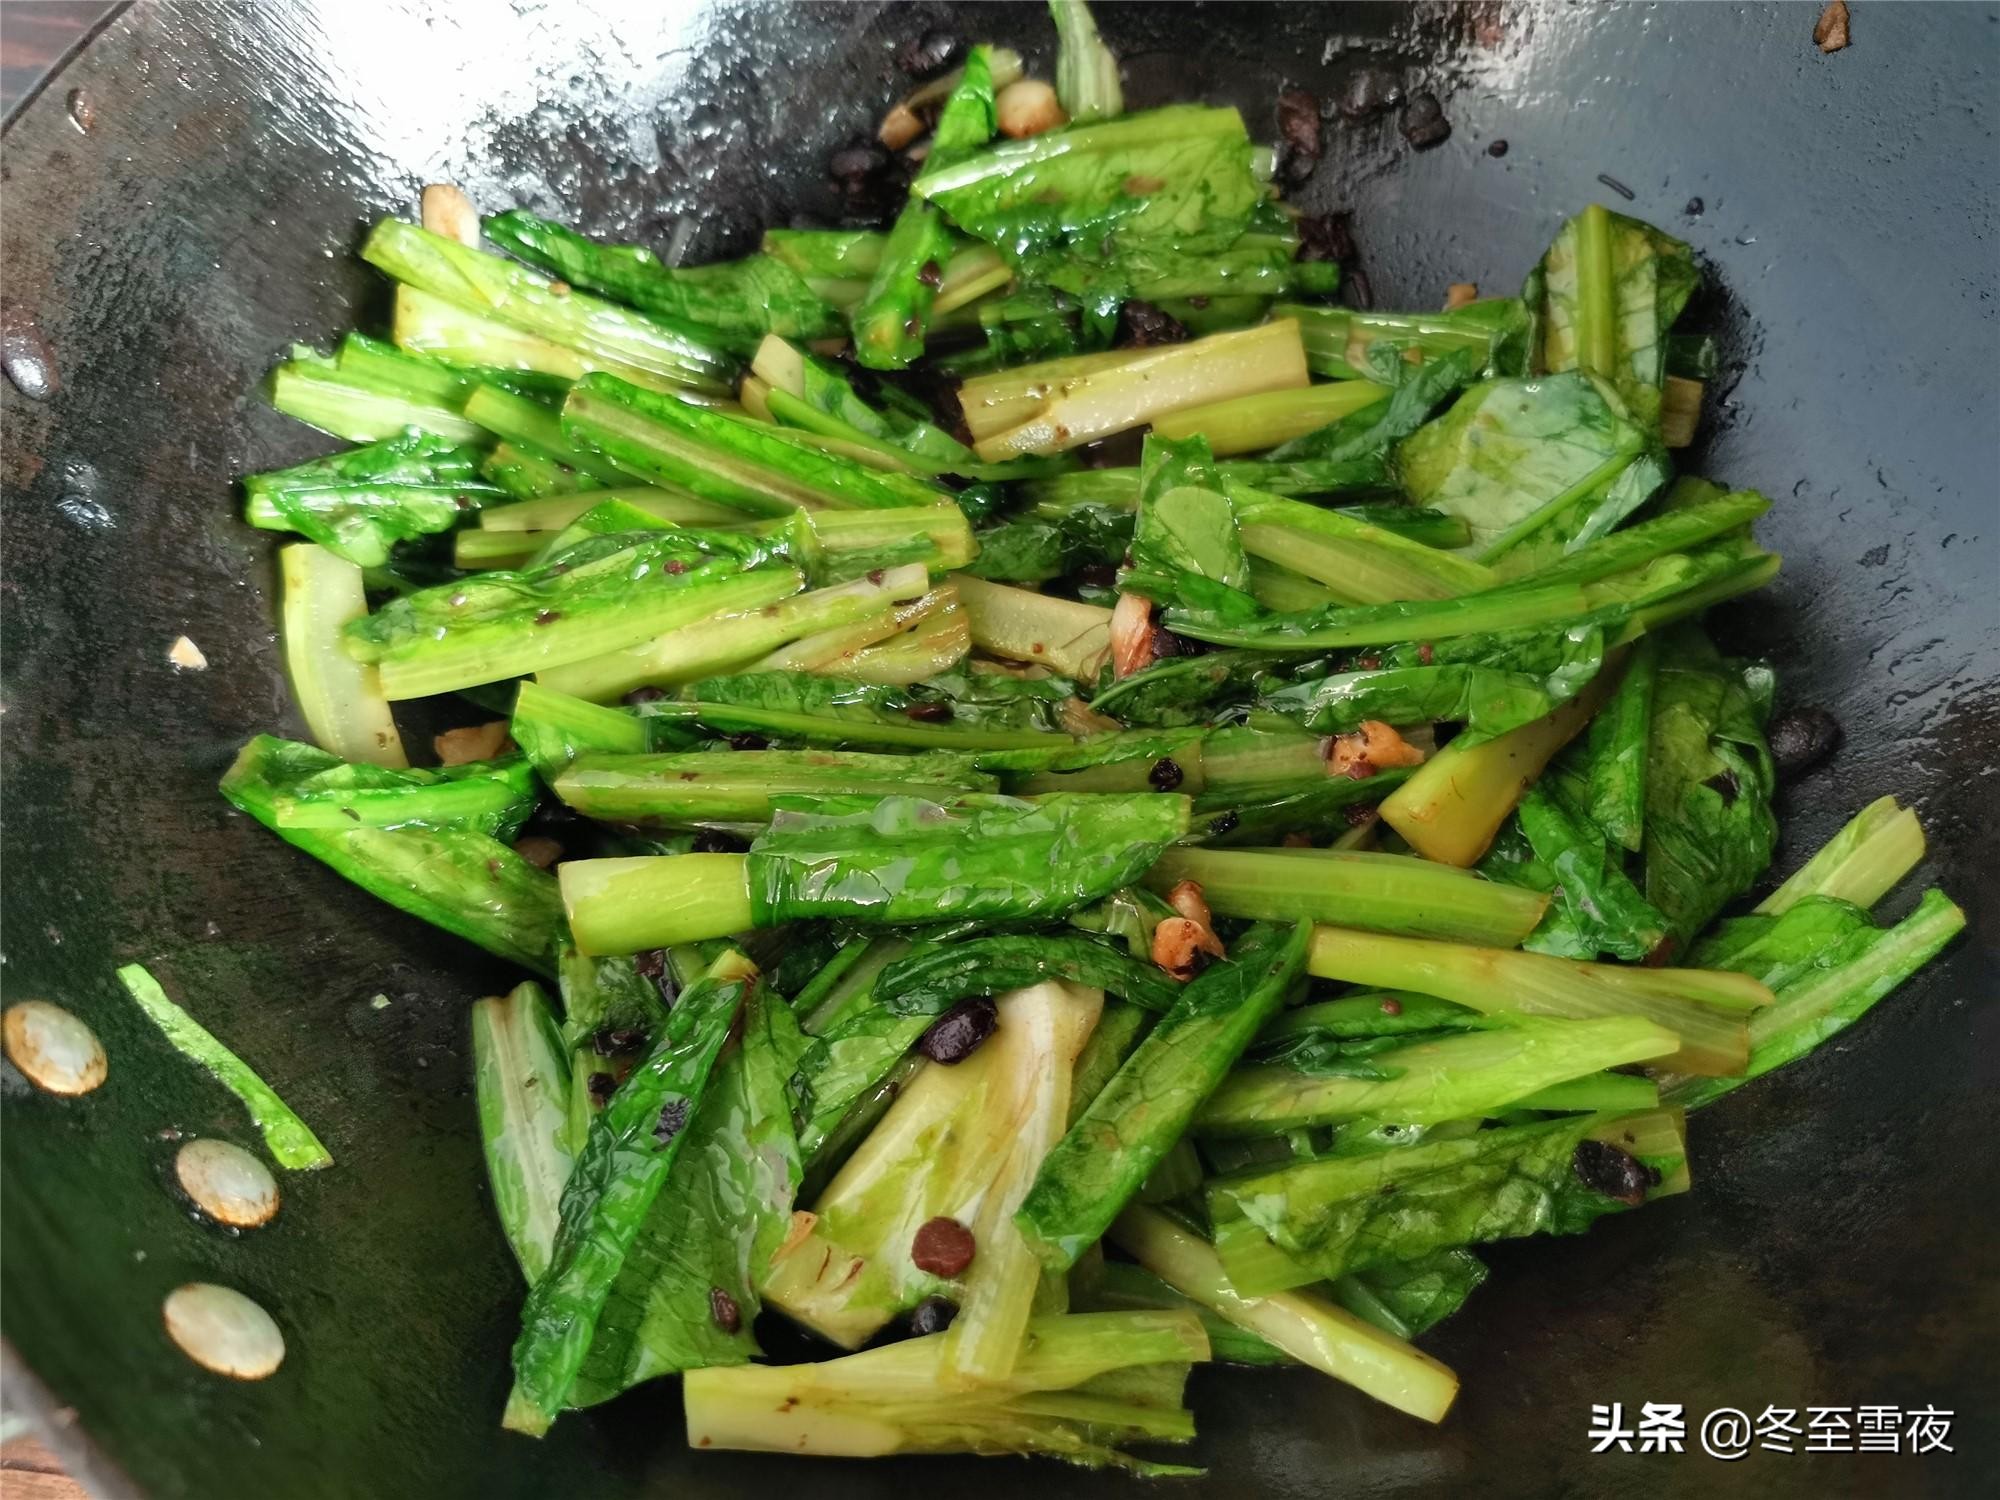 豆豉鲮鱼油麦菜怎样做好吃？教你炒制小技巧，油麦菜颜色翠绿不黄